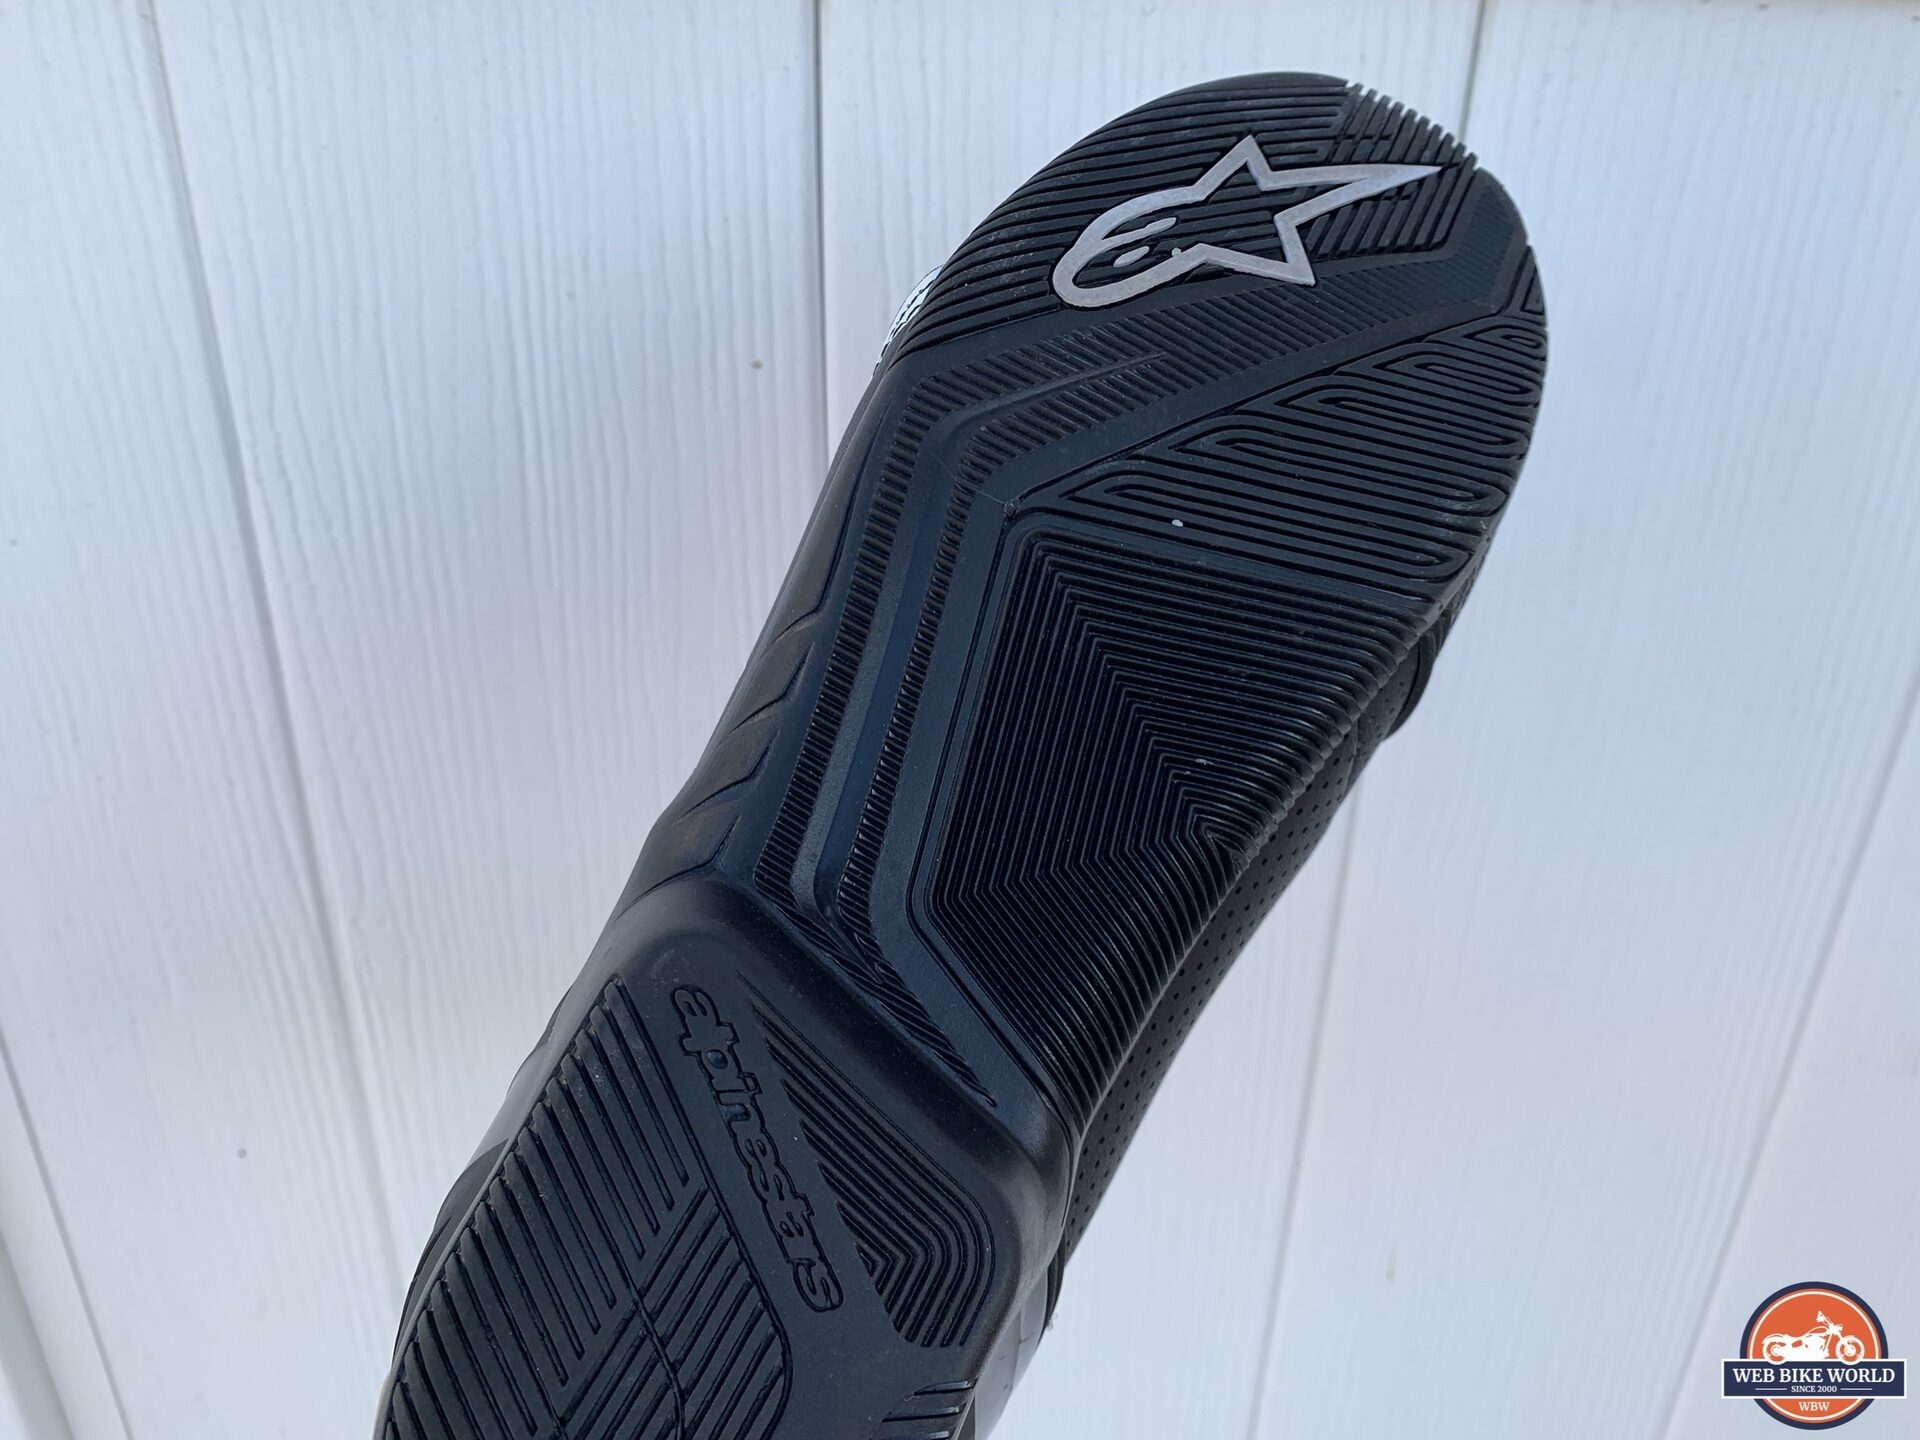 Alpinestars logo visible on sole of SP-1 V2 Vented Shoe